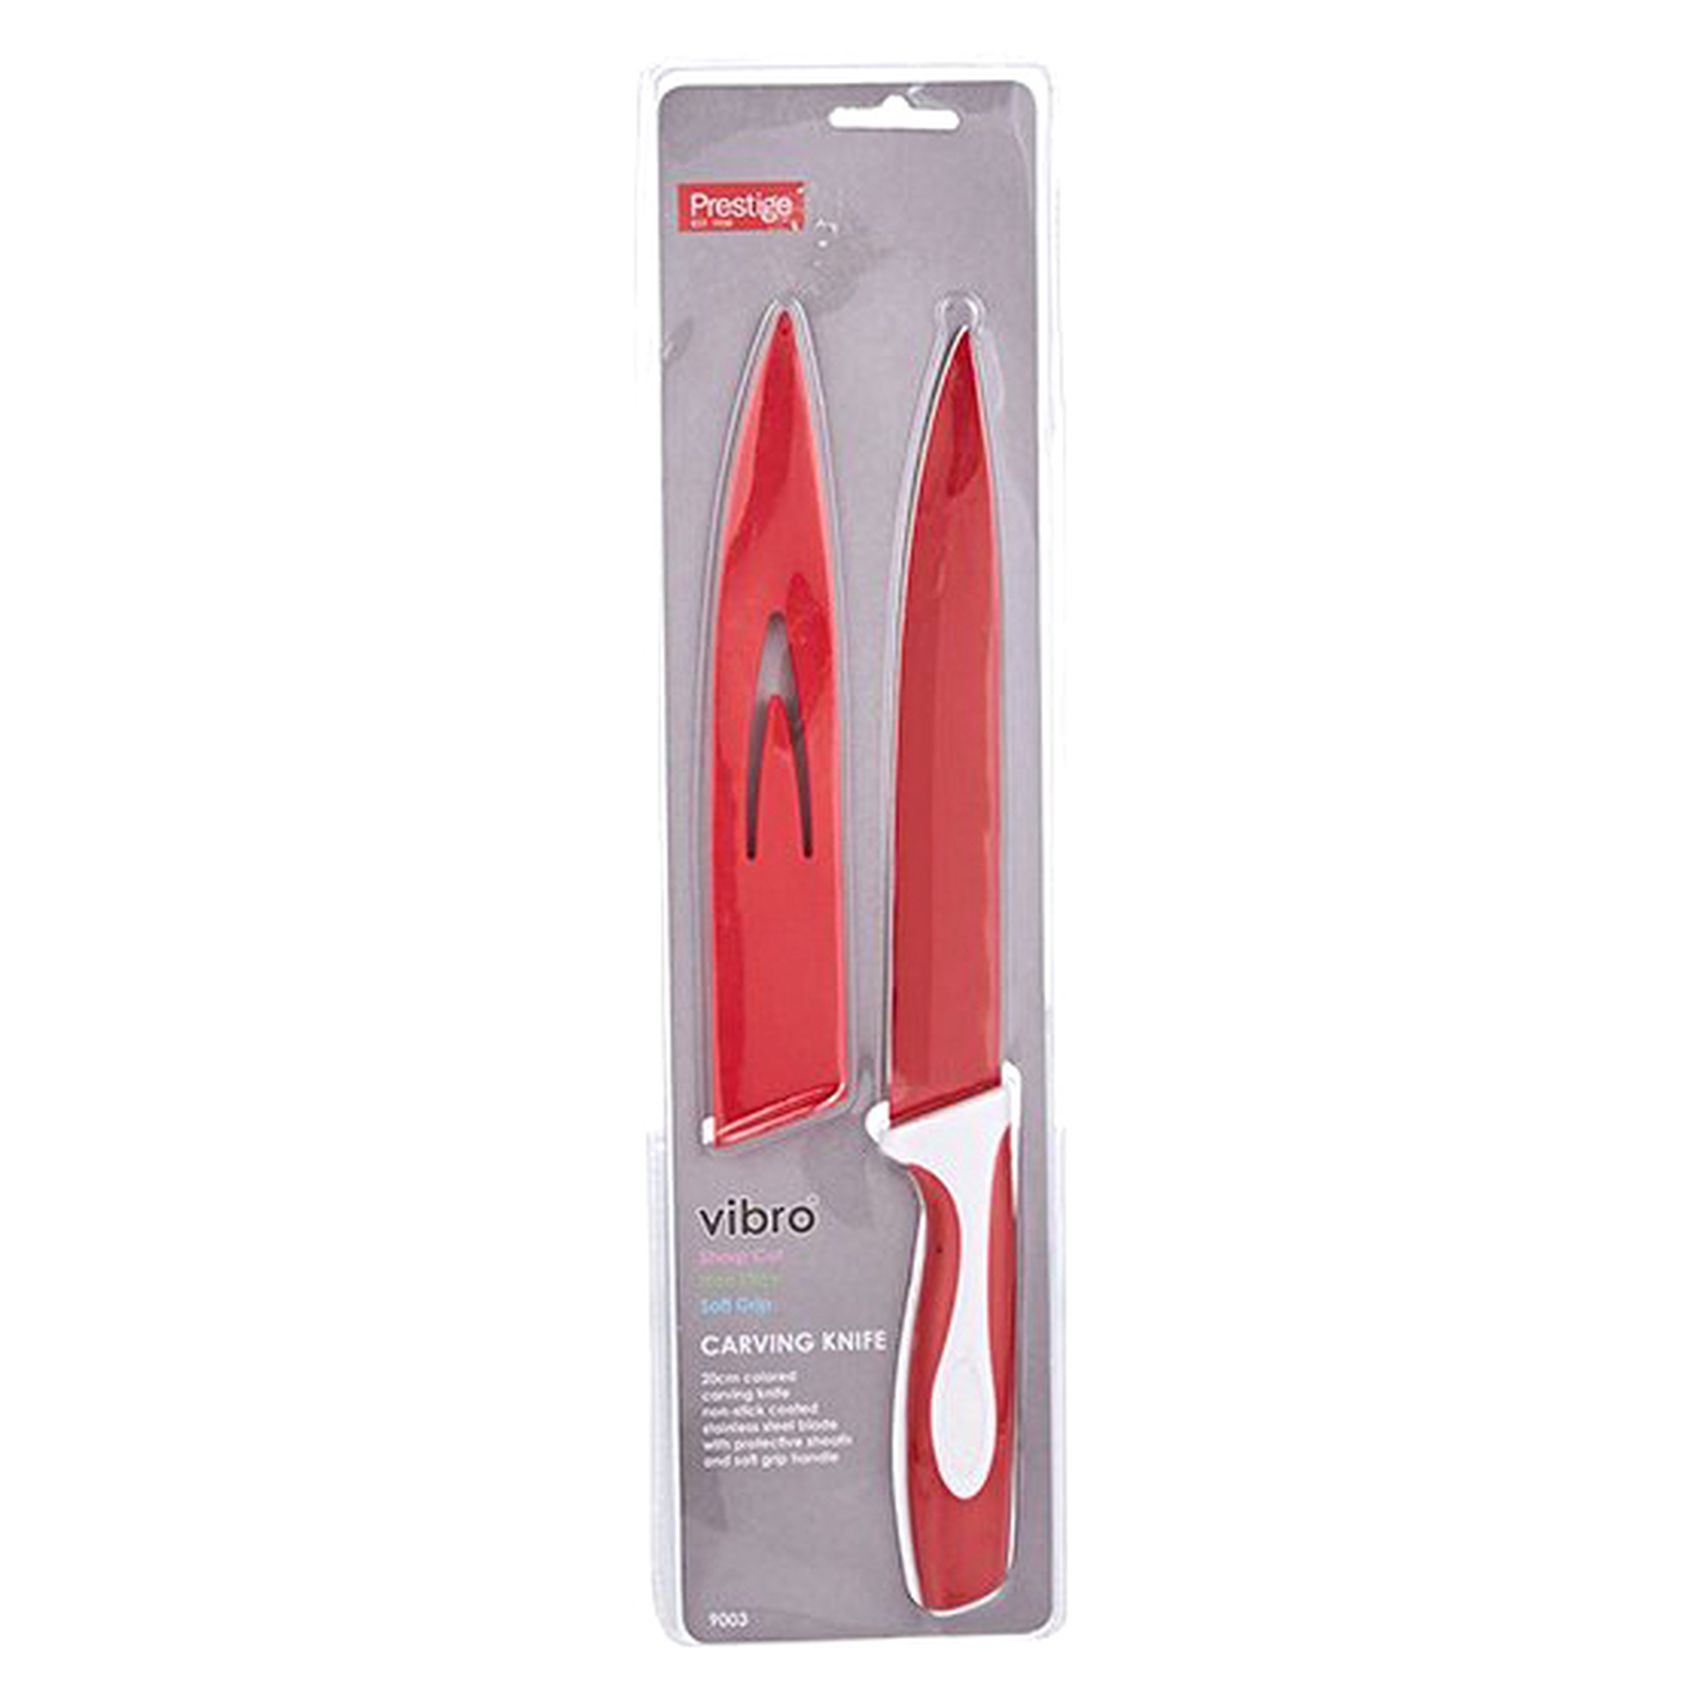 برستيج فيبرو سكين نحت مع غطاء PR9003 أحمر وأبيض 20 سم